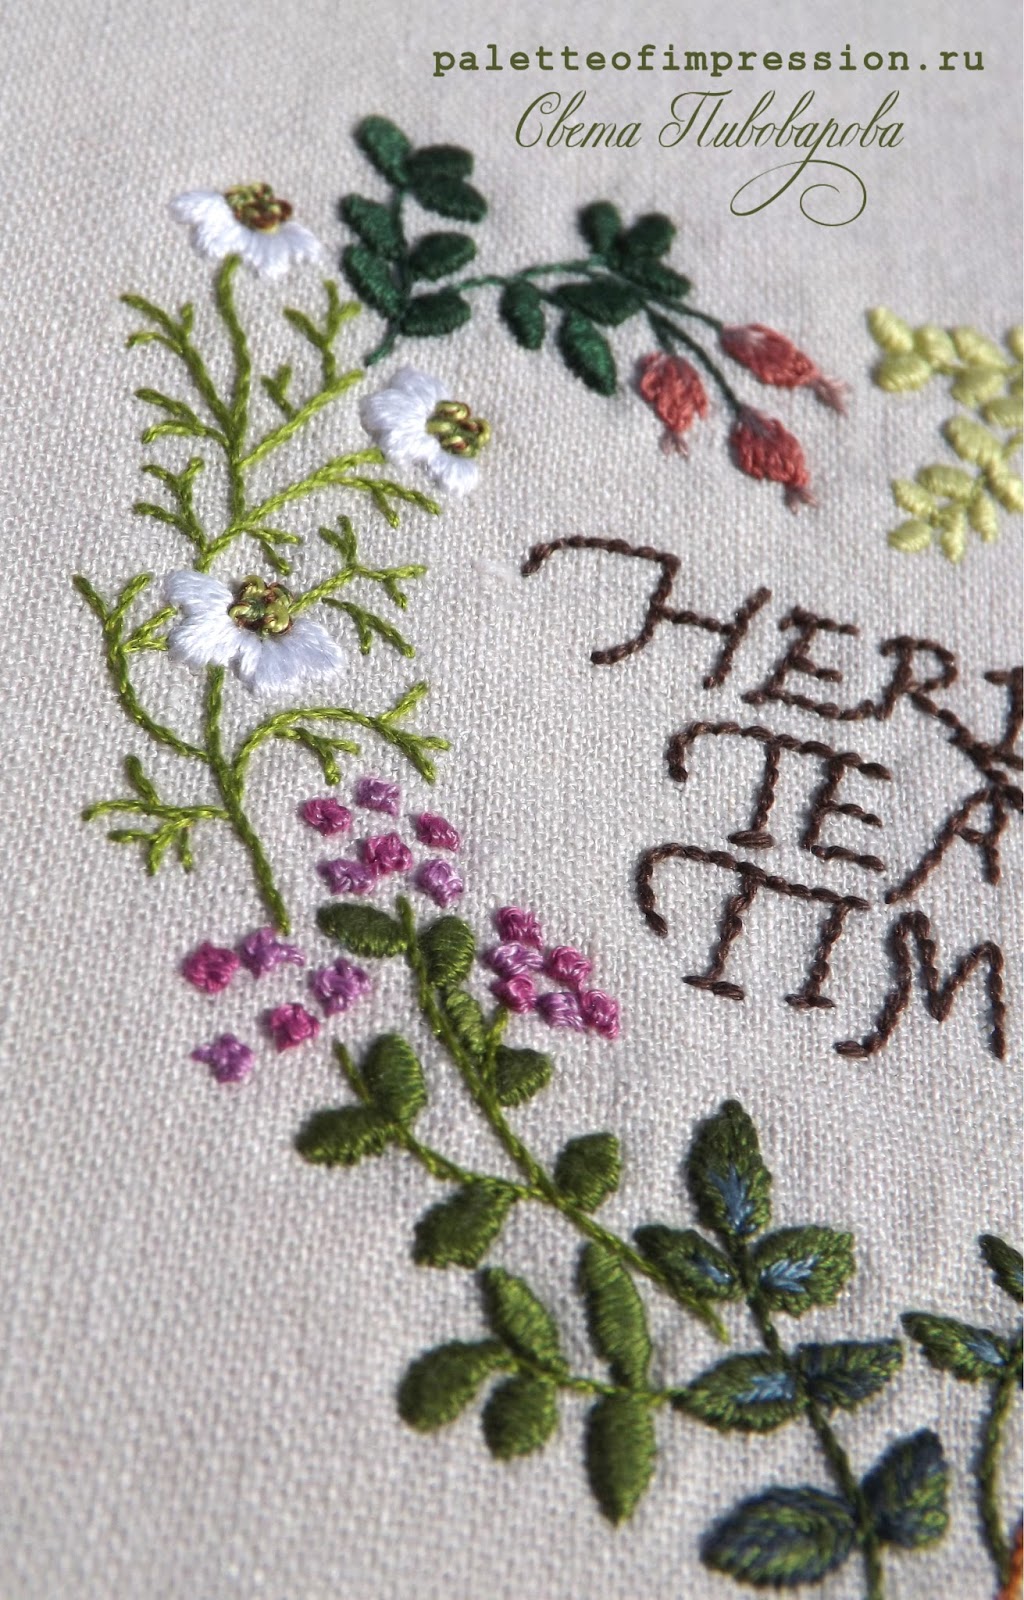 Травяной венок из семплера Herb tea time  дизайна Sadako Totsuka. Вышивка контурная и гладь. Блог Вся палитра впечатлений Palette of impression blog Hand embroidery